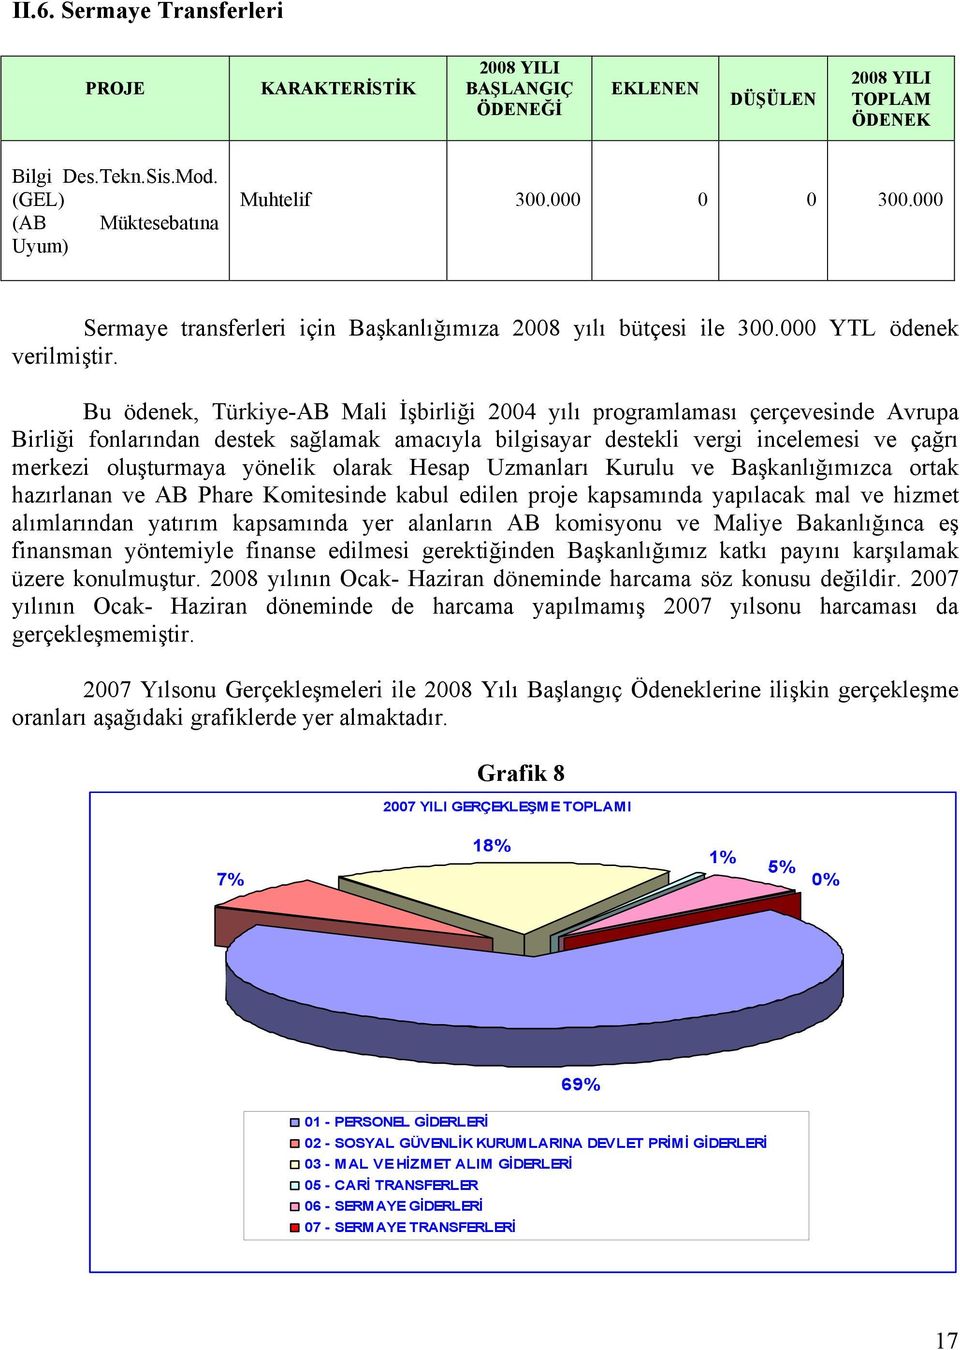 Bu ödenek, Türkiye-AB Mali İşbirliği 2004 yılı programlaması çerçevesinde Avrupa Birliği fonlarından destek sağlamak amacıyla bilgisayar destekli vergi incelemesi ve çağrı merkezi oluşturmaya yönelik